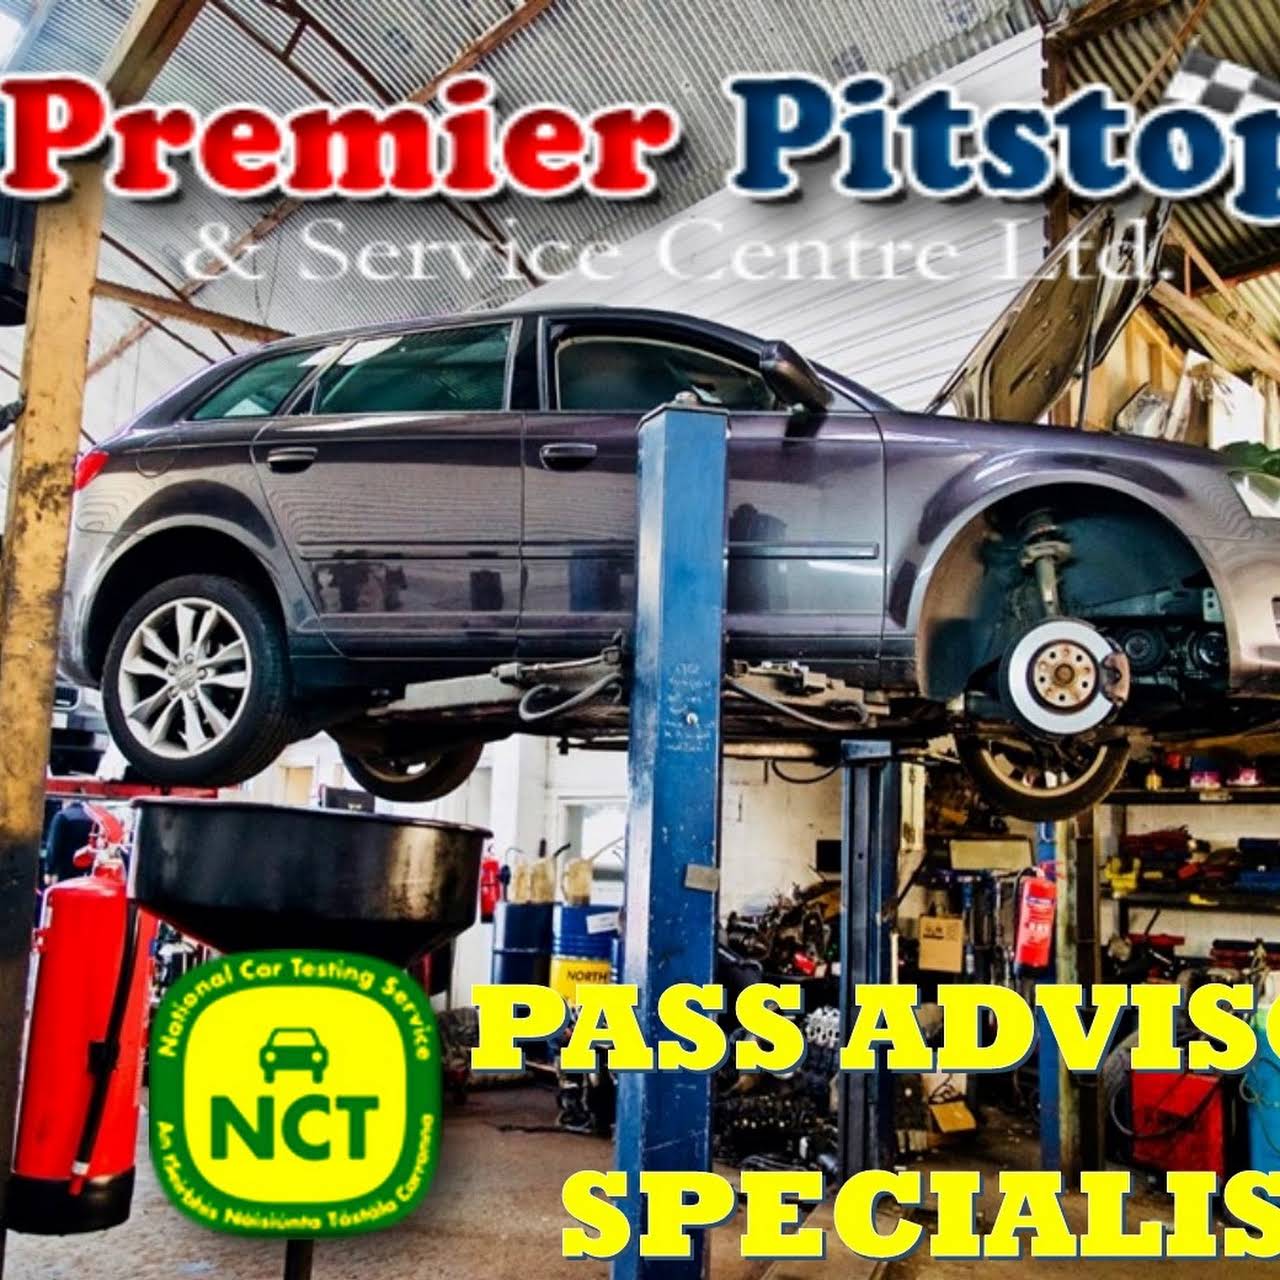 Premier Pitstop & Service Centre Ltd 2